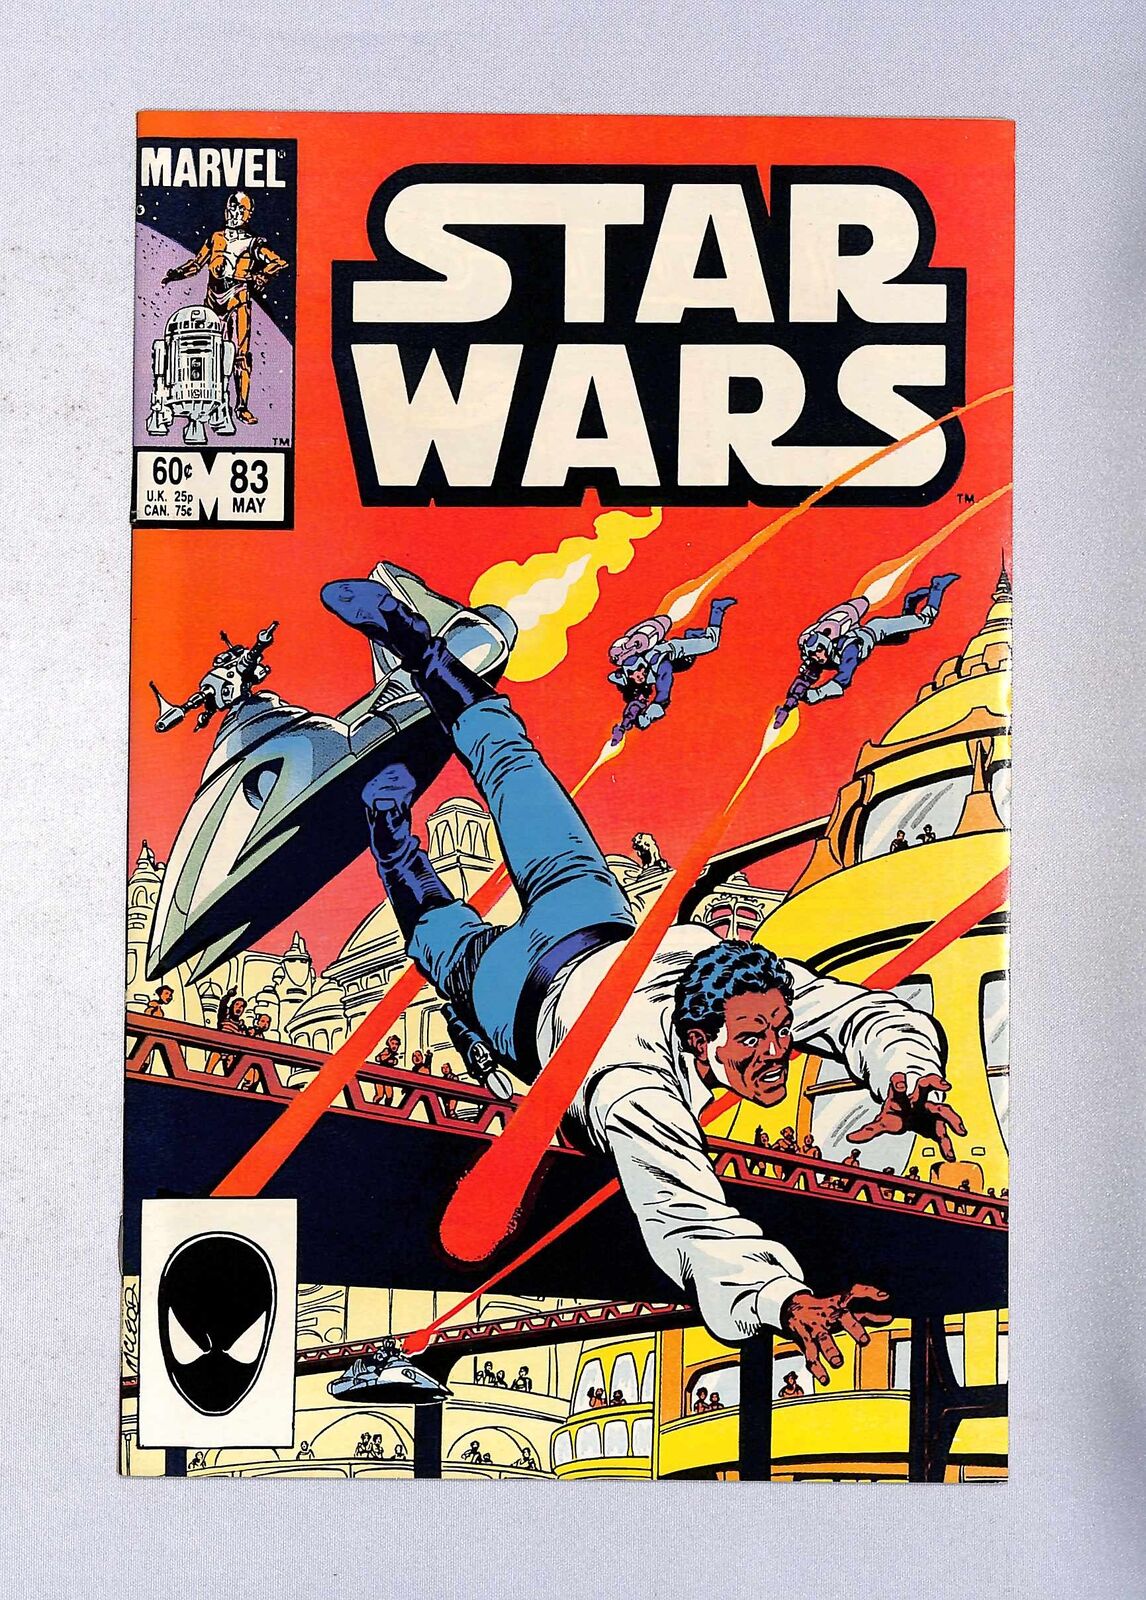 (5065) STAR WARS (1977) #83 grade 9.2   May 1984